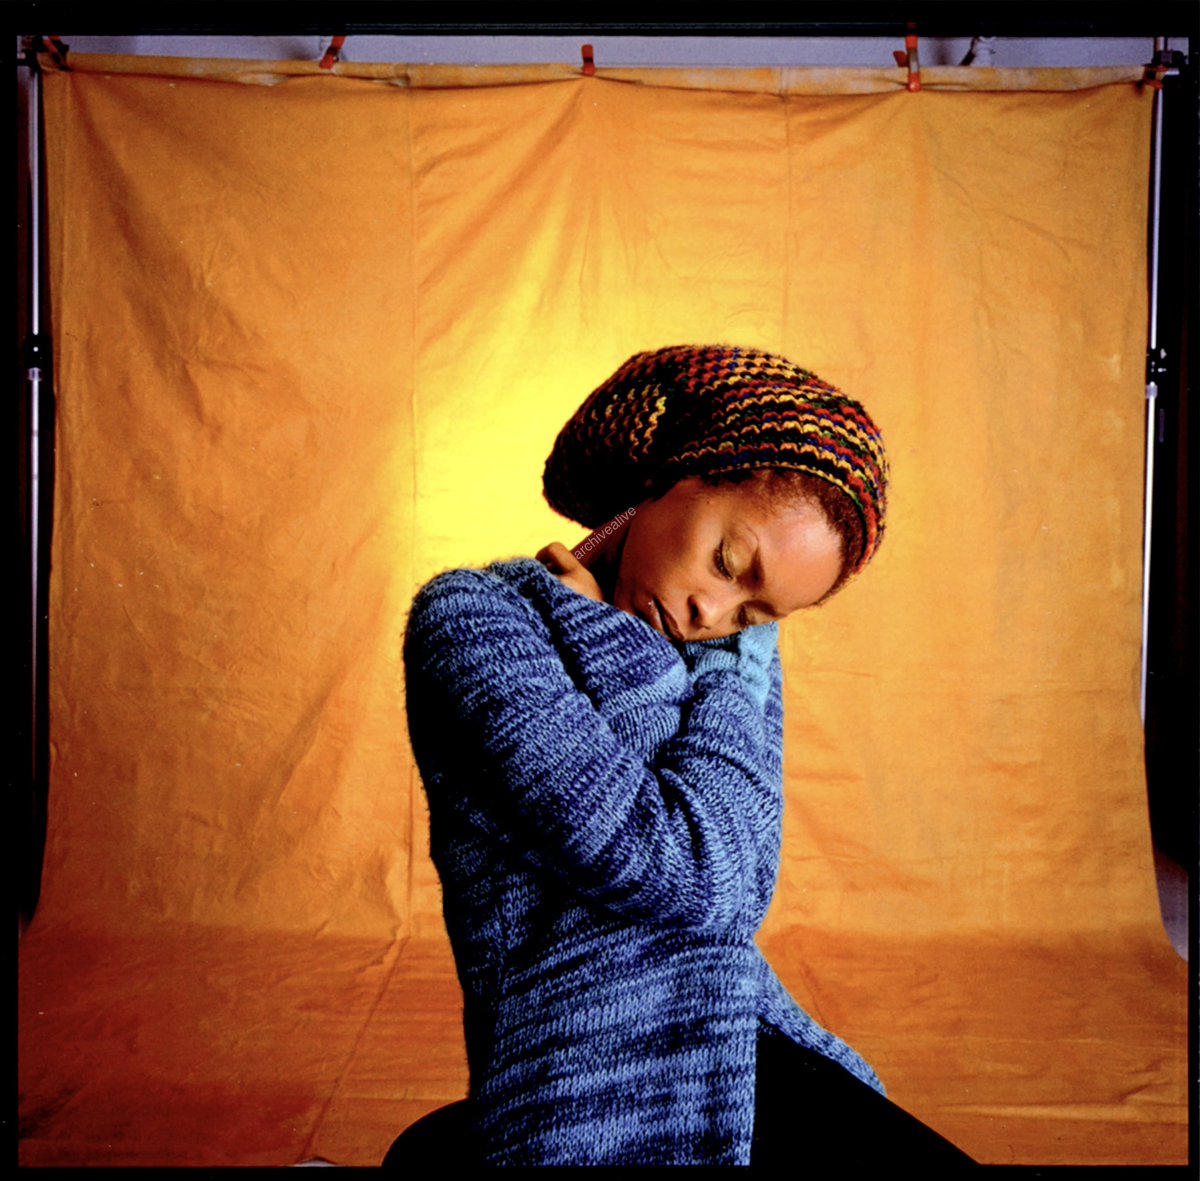 Erykah Badu photographed by Anthony Barboza (2000)